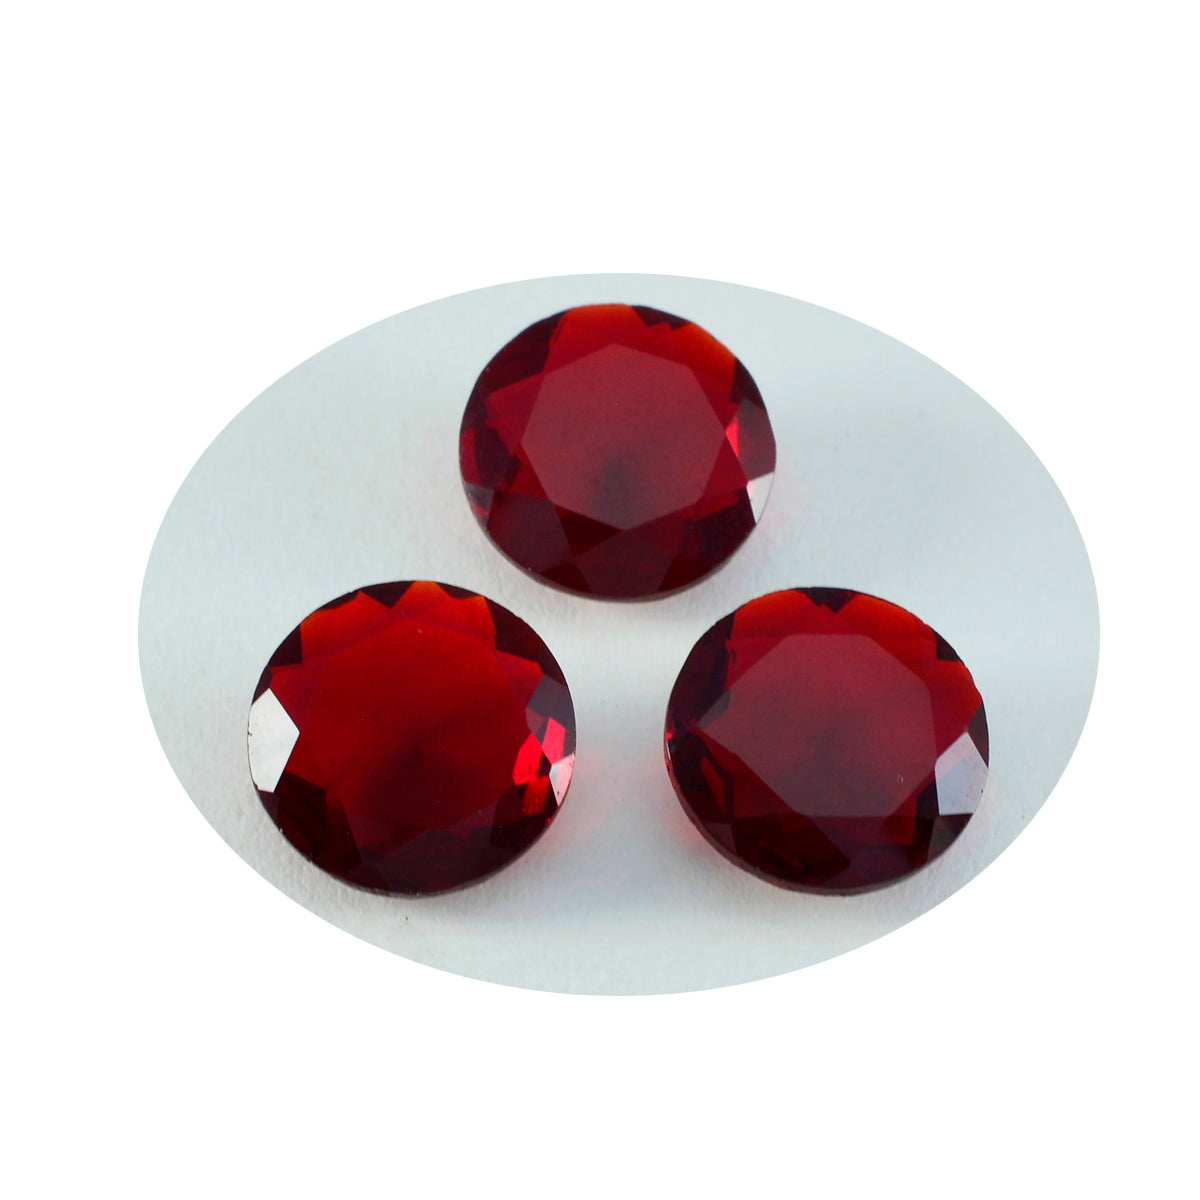 Riyogems 1 Stück roter Rubin mit CZ, facettiert, 15 x 15 mm, runde Form, hübsche lose Edelsteine von hoher Qualität